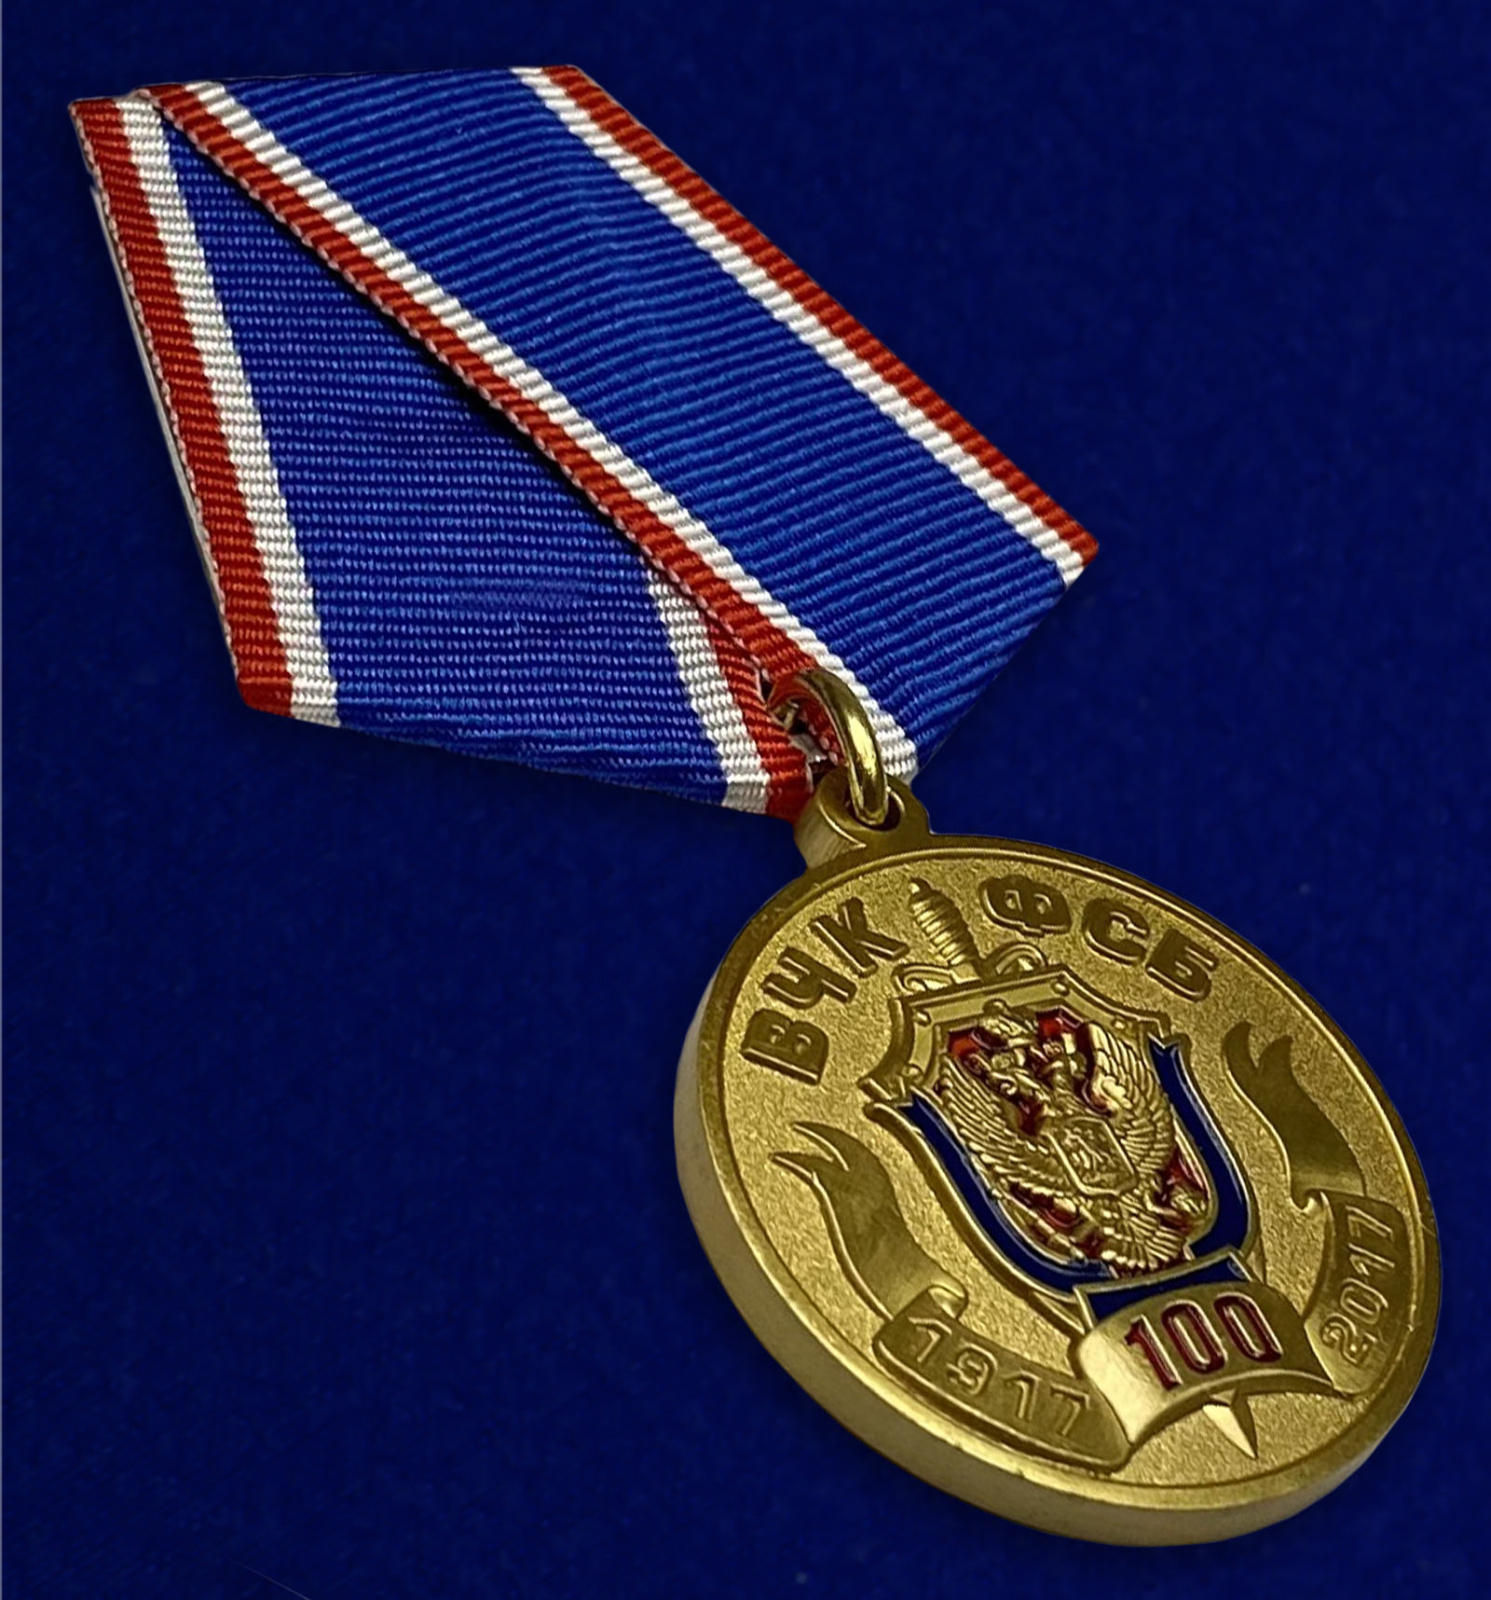 Купить медаль "100 лет Федеральной службы безопасности"